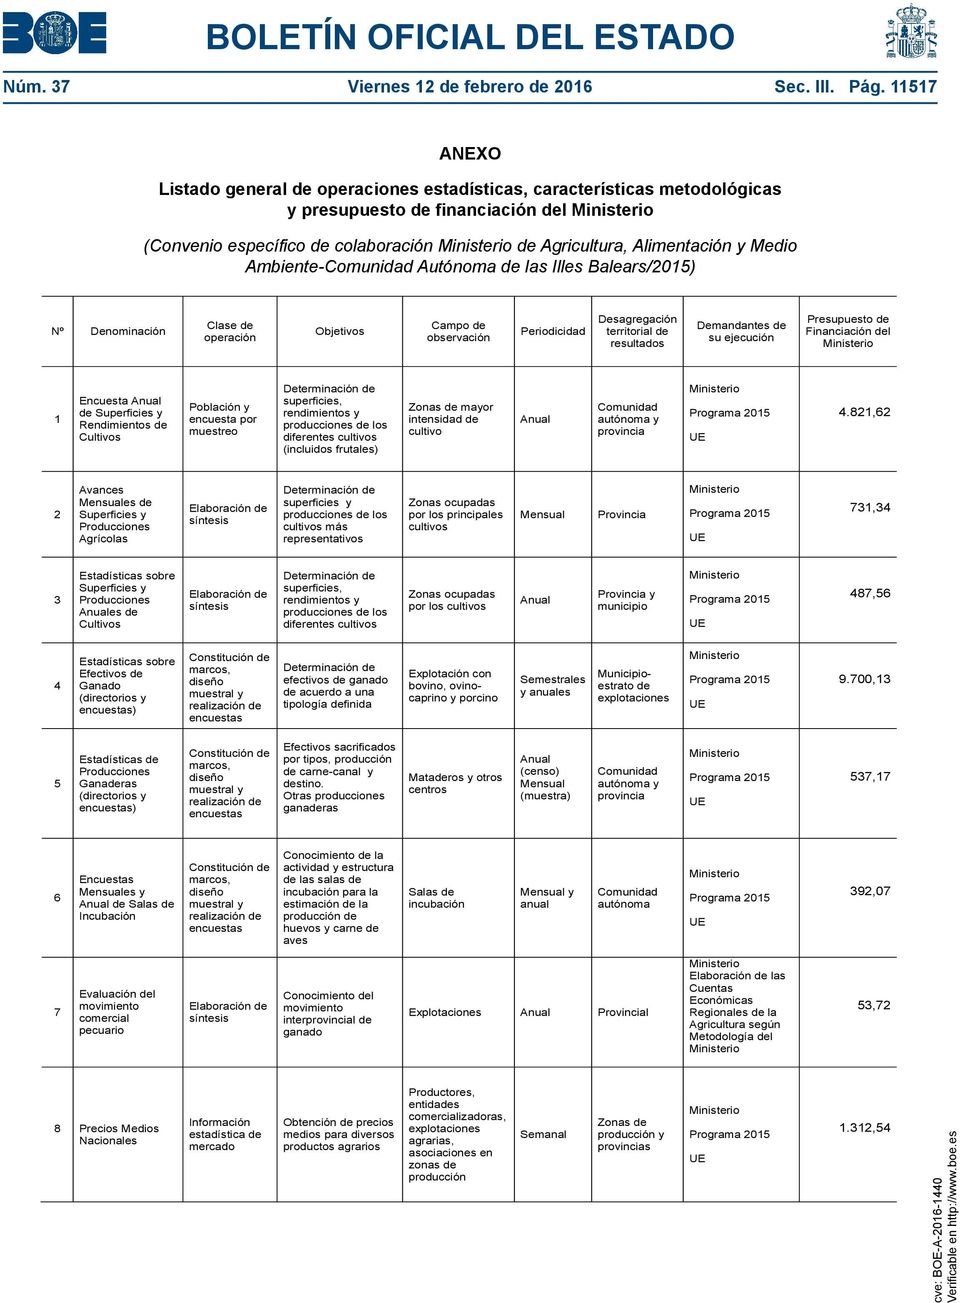 Ambiente- Autónoma de las Illes Balears/2015) Nº Denominación Clase de operación Objetivos Campo de observación Periodicidad Desagregación territorial de resultados Demandantes de su ejecución